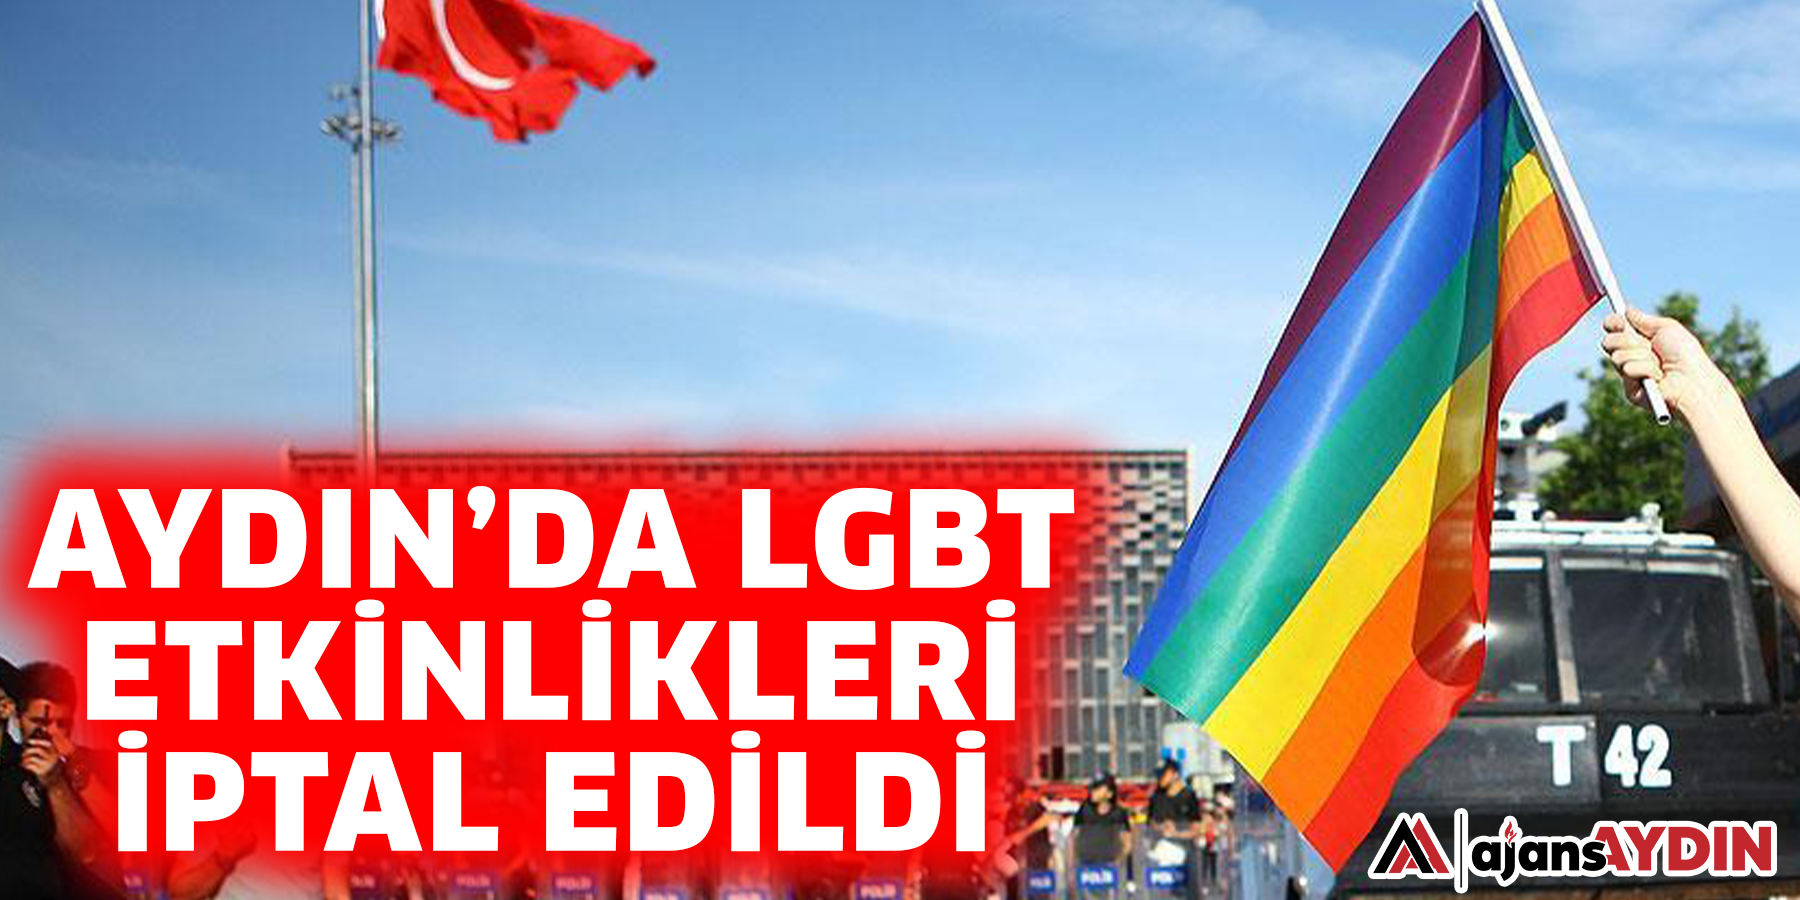 Aydın'da LGBT etkinlikleri yasaklandı